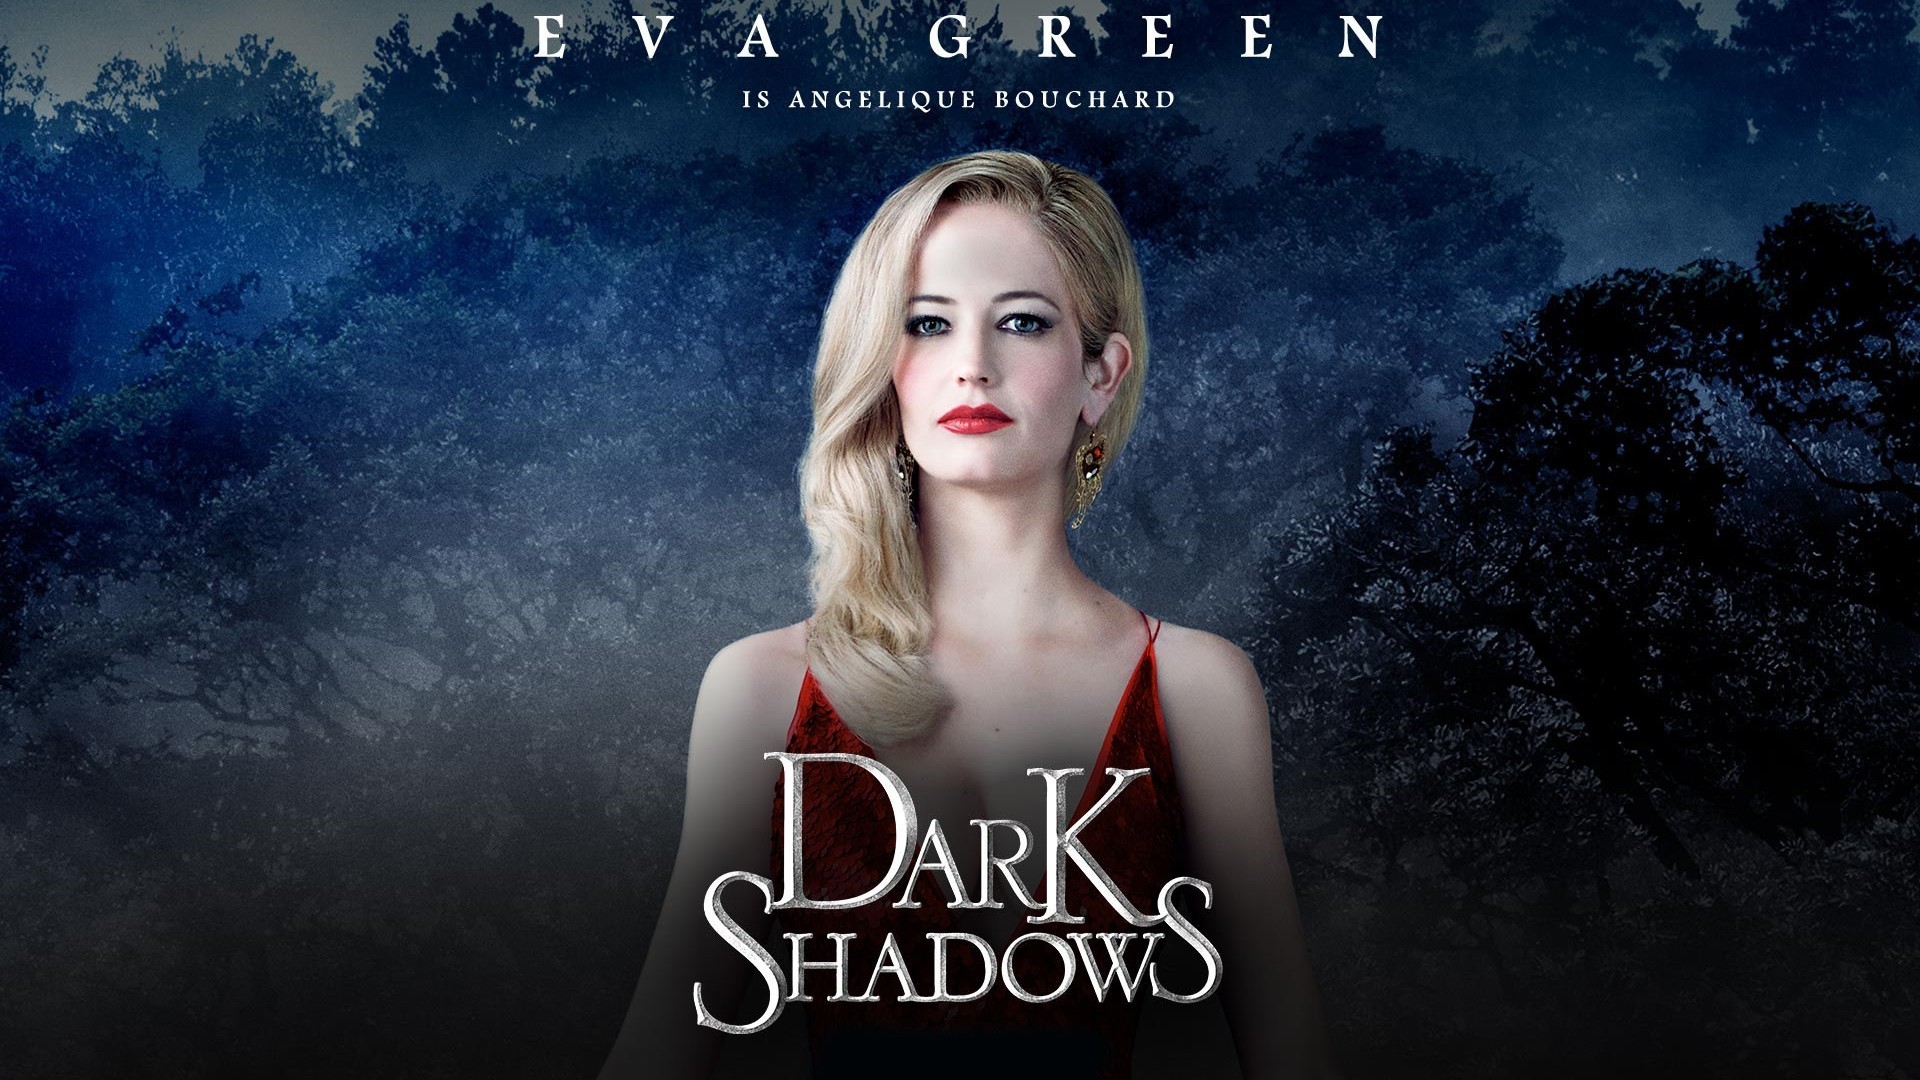 Dark Shadows Eva Green for 1920 x 1080 HDTV 1080p resolution